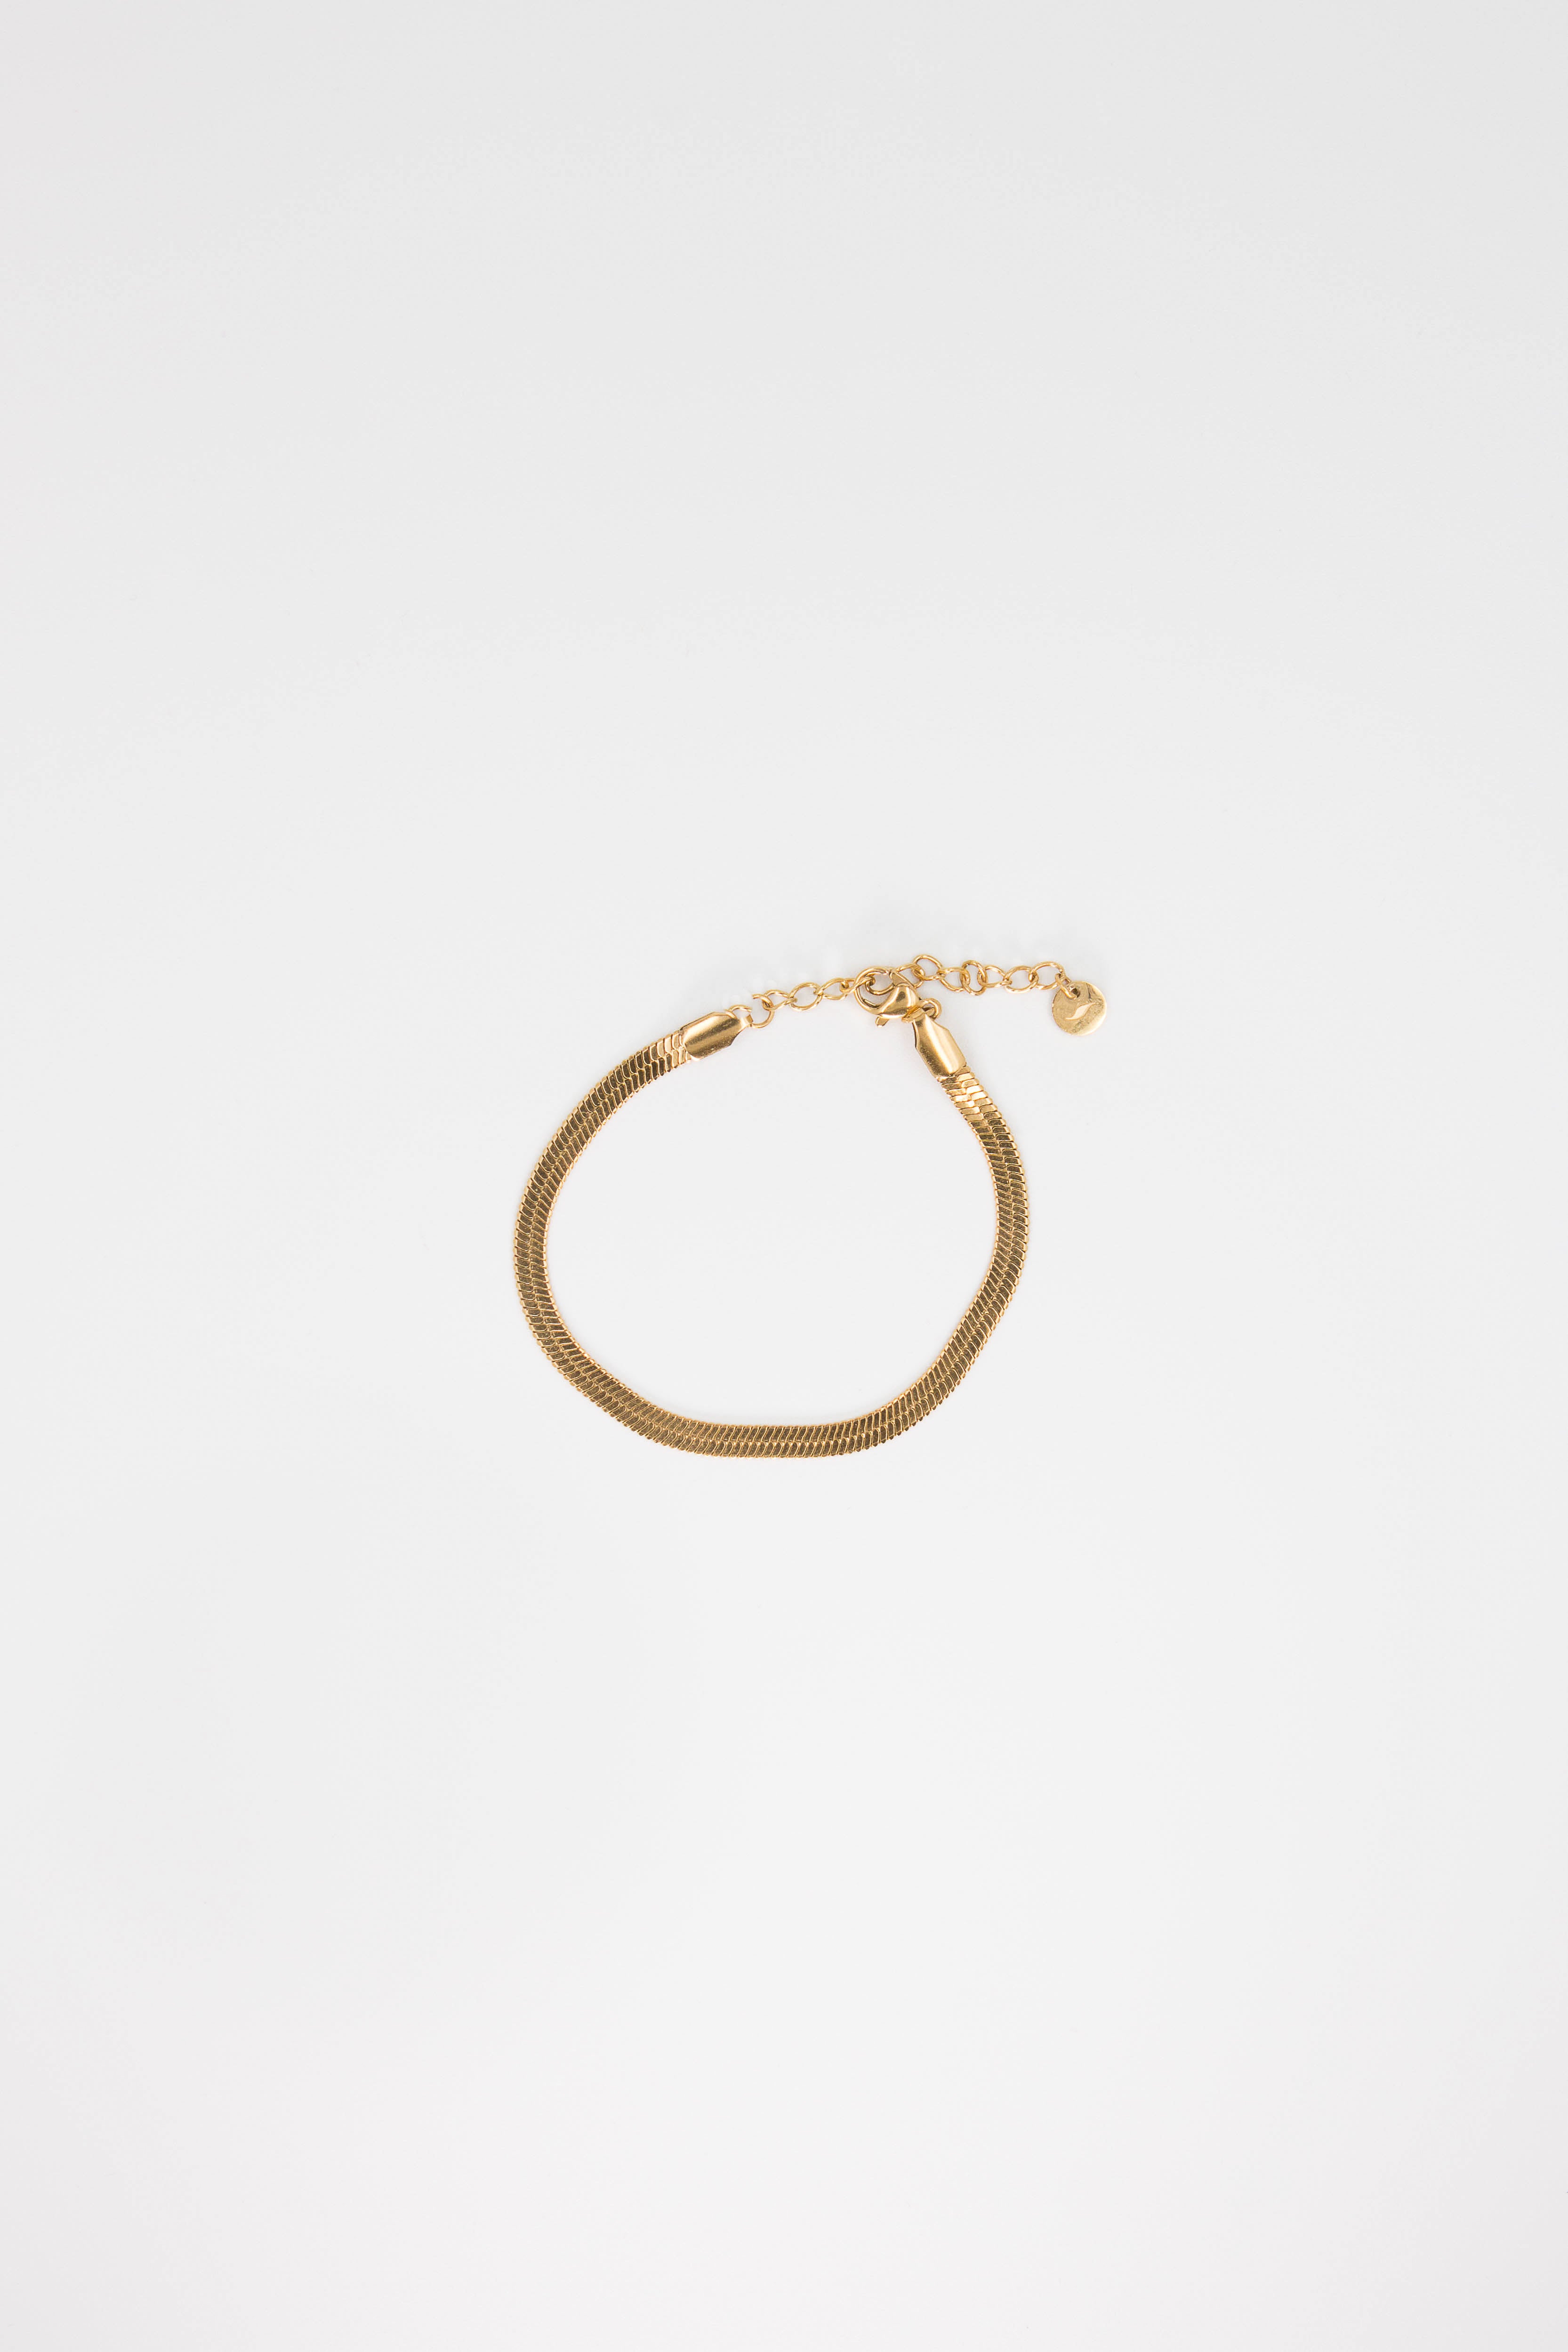 Snail Bracelet - caliorjewelry